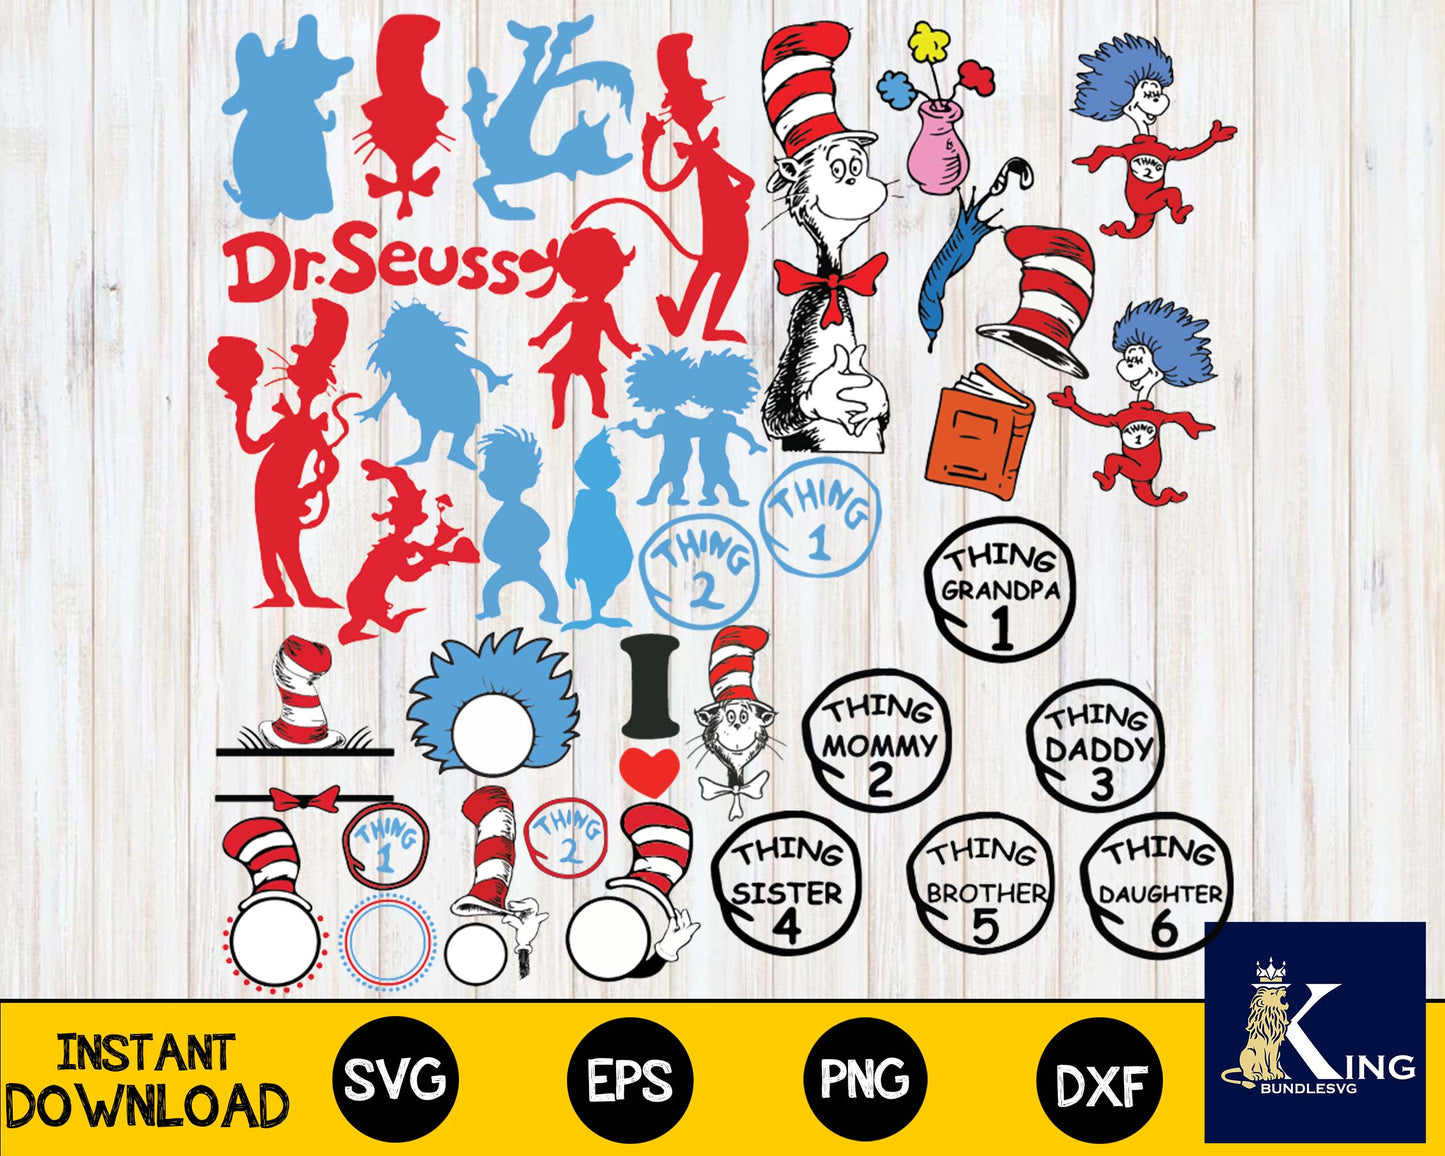 600+ File Dr Seuss svg, Bundle Dr Seuss file,Mega bundle Dr Seuss for Cricut, Silhouette, digital, file cut